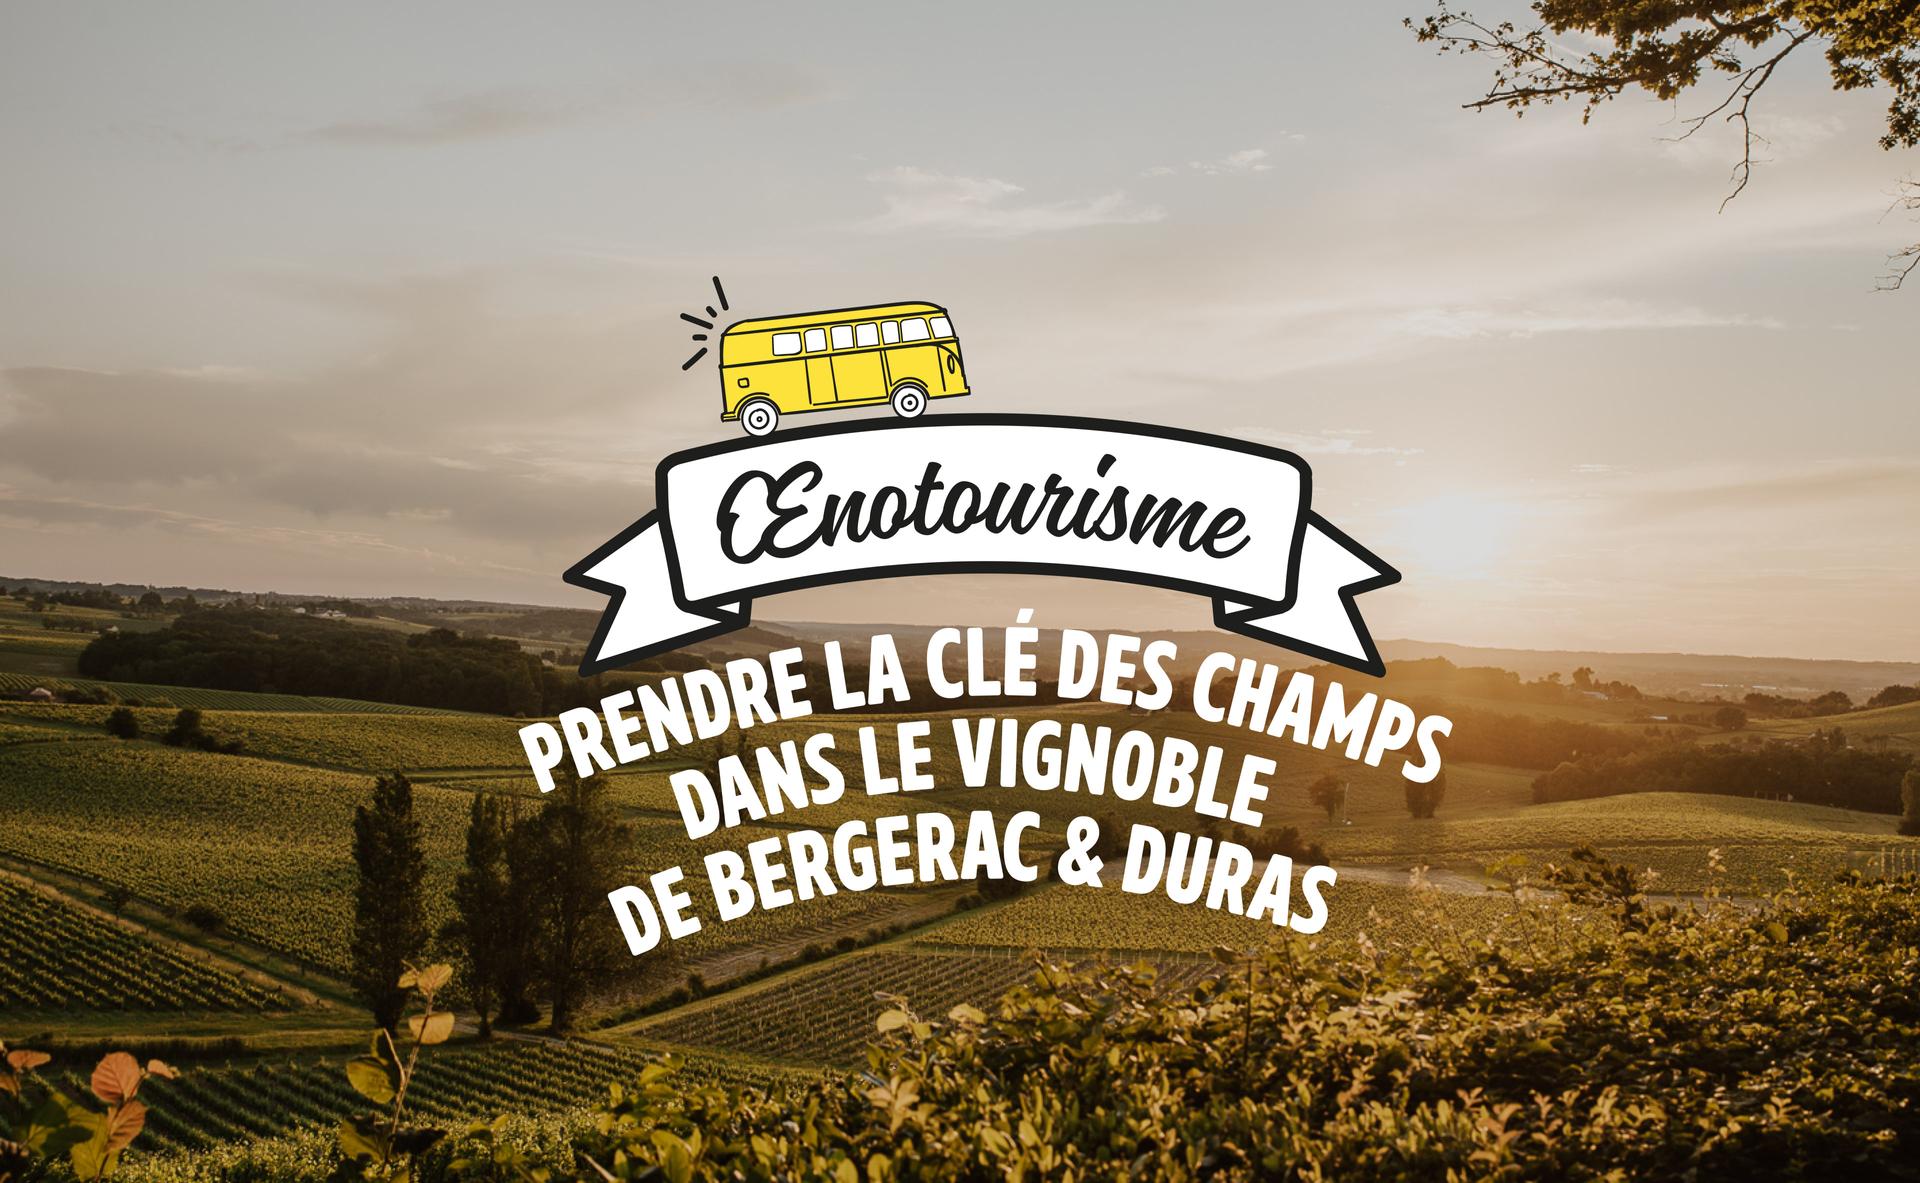 Prendre la clé des champs dans le vignoble de Bergerac & Duras